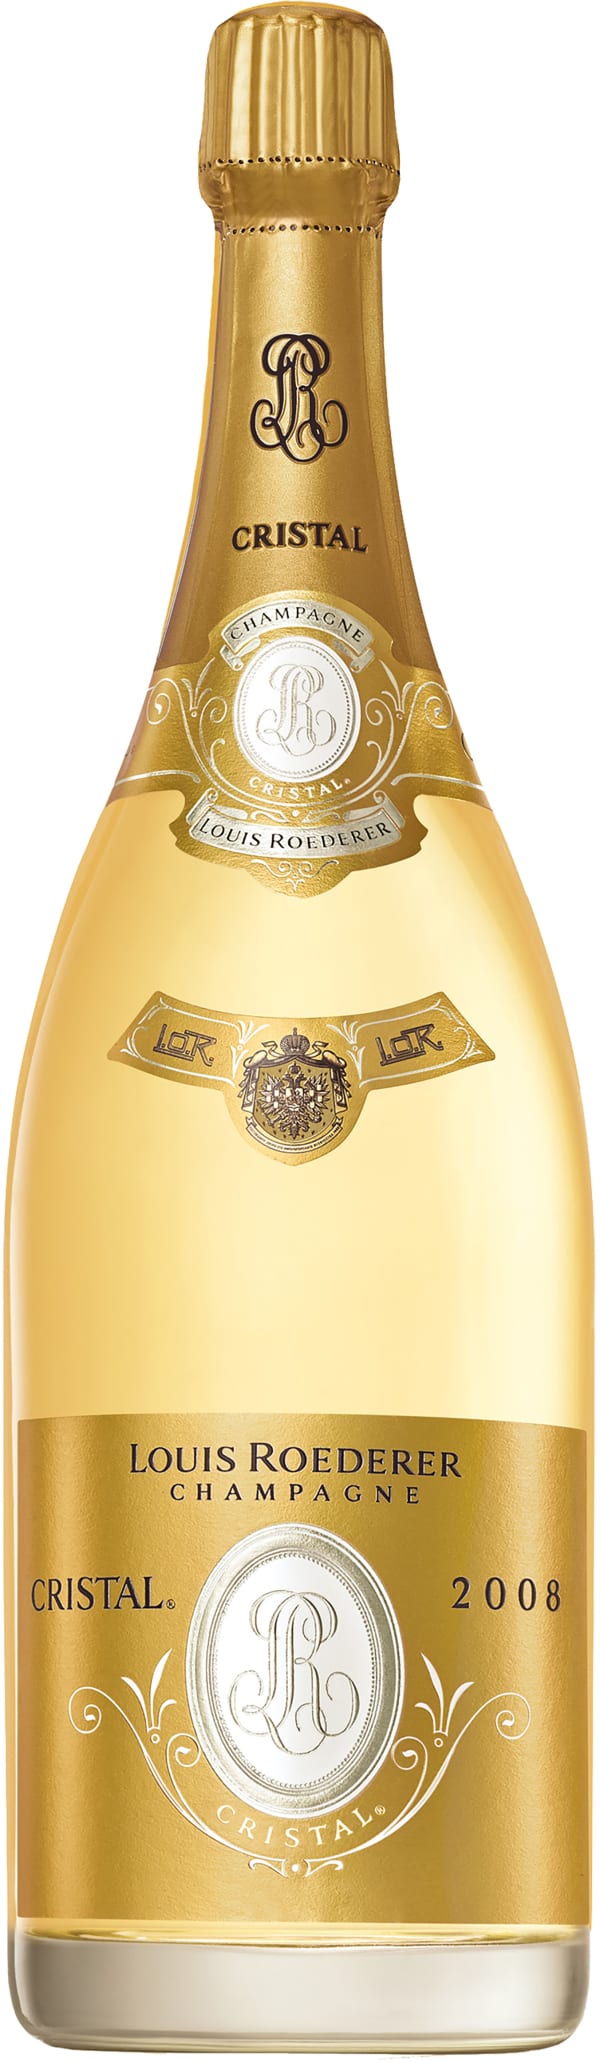 Louis Roederer Cristal Champagne Brut Magnum 2008